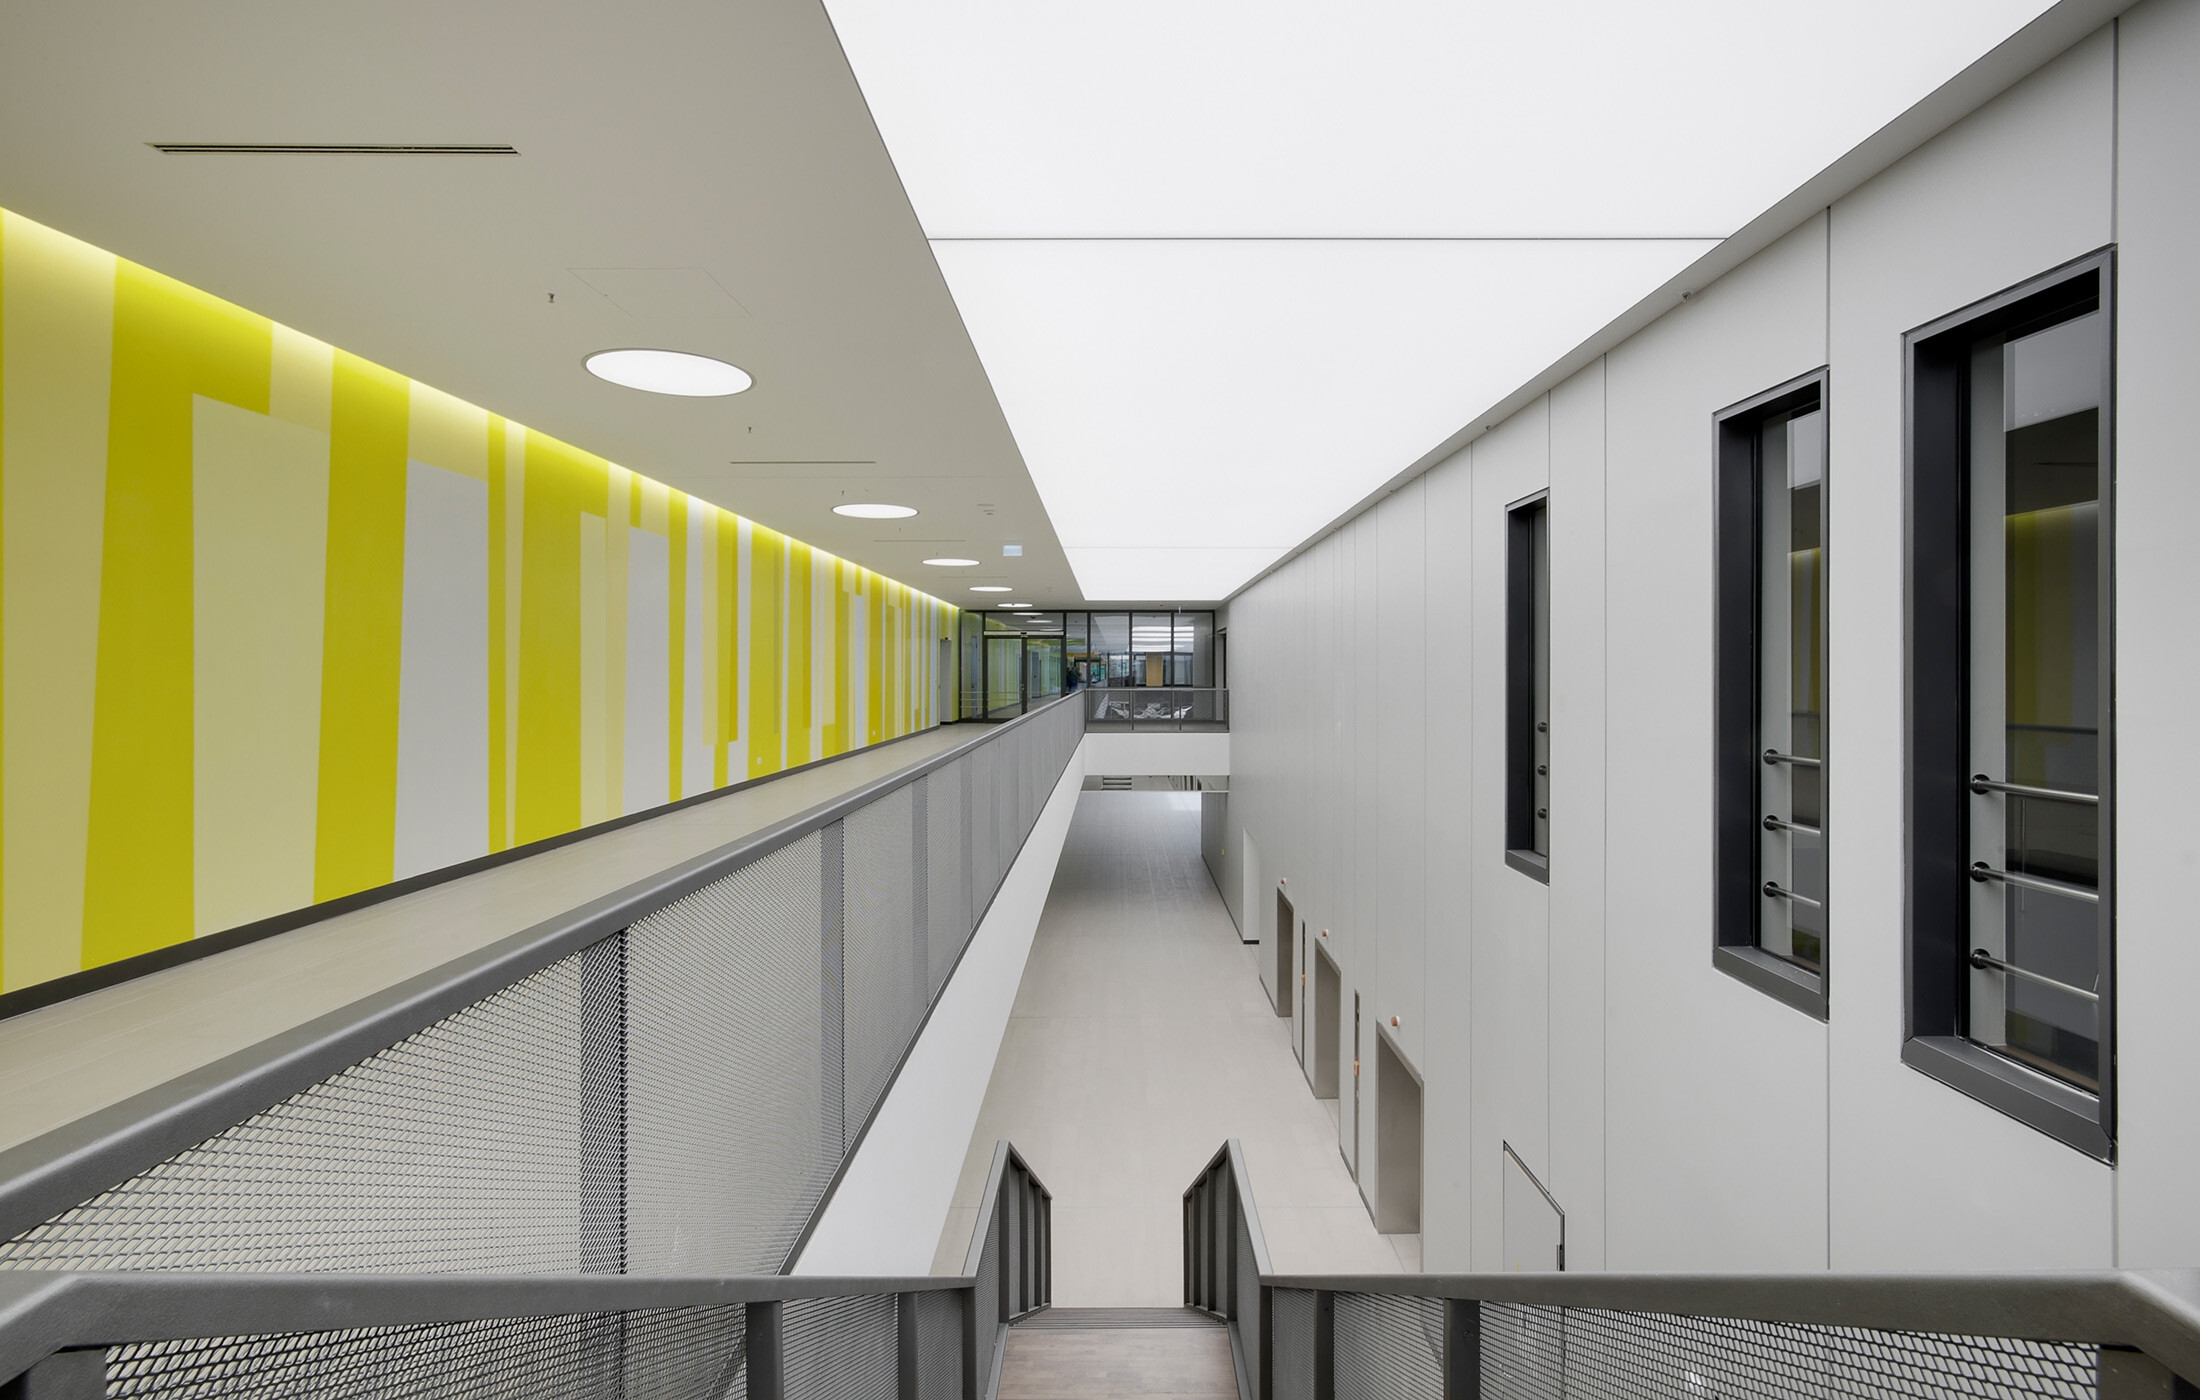 2014, Neubau Rems-Murr Klinikum, Winnenden